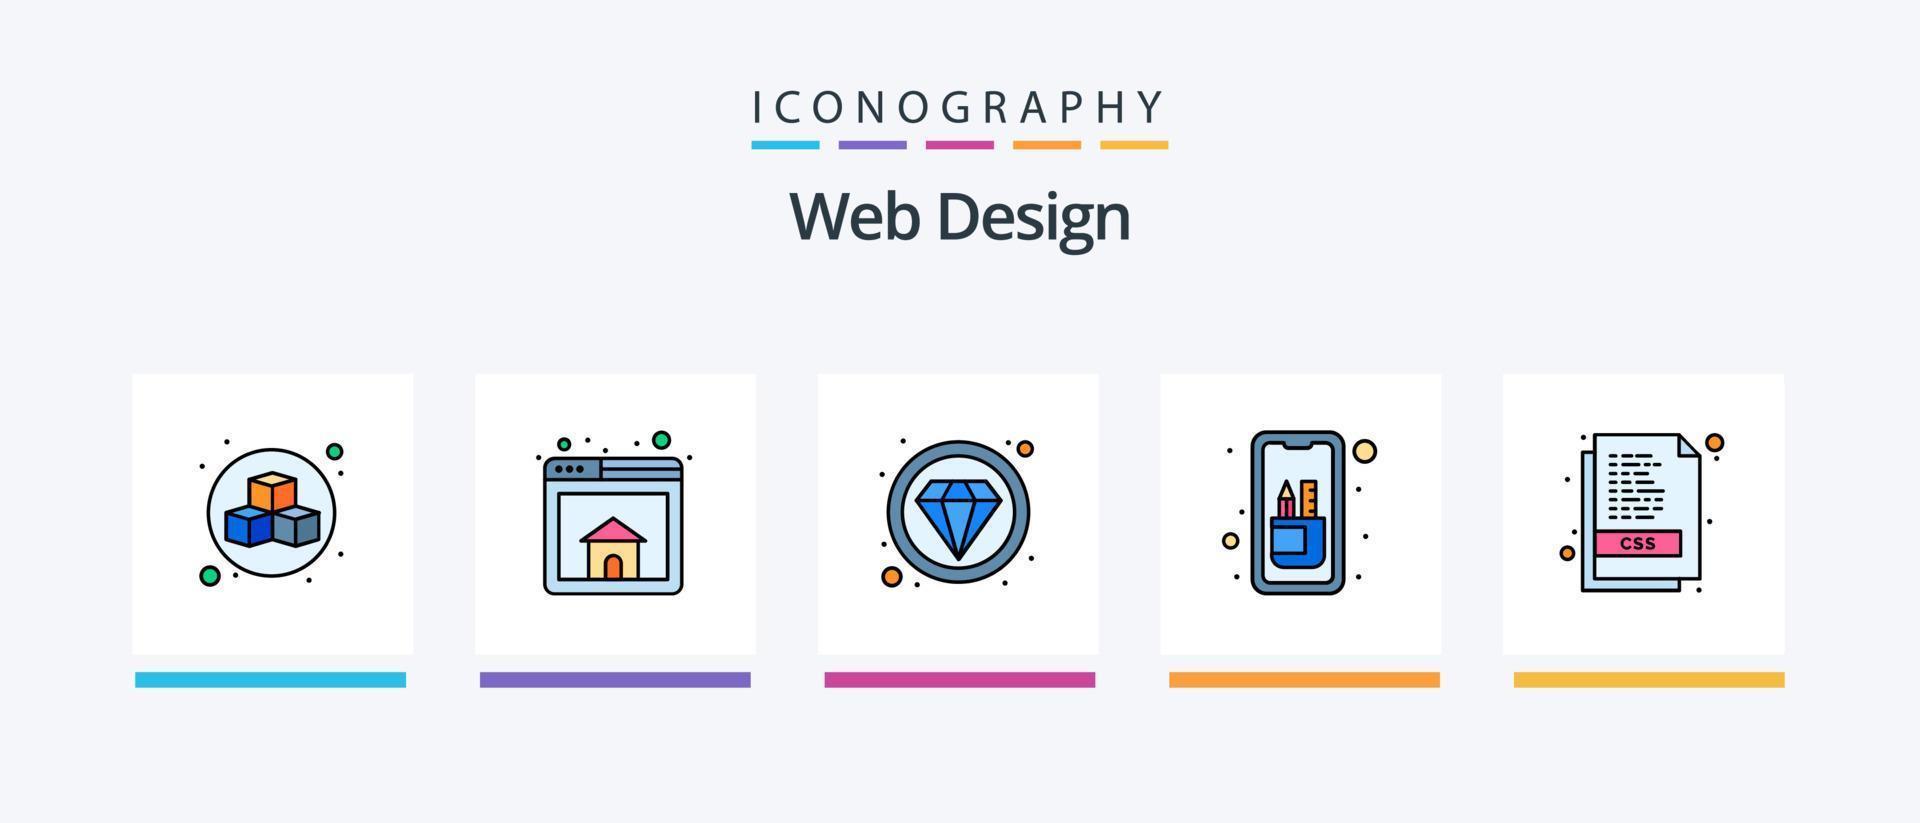 La línea de diseño web llenó un paquete de 5 íconos que incluye herramientas de edición. móvil. capa. diseño. web. diseño de iconos creativos vector